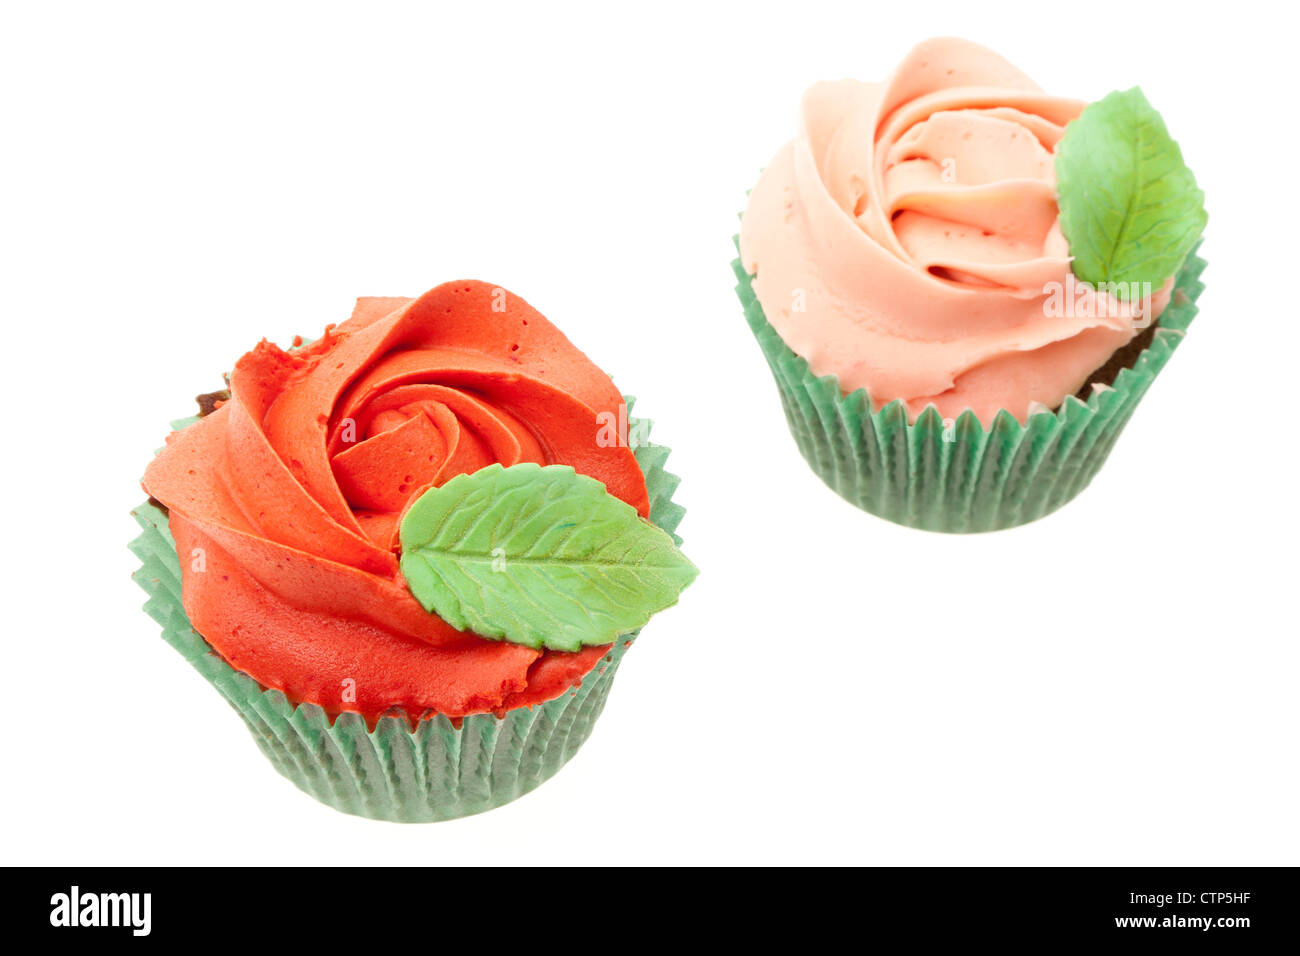 Cupcakes avec une rose rouge buttercream design topping, faible profondeur de champ - studio photo avec un fond blanc Banque D'Images